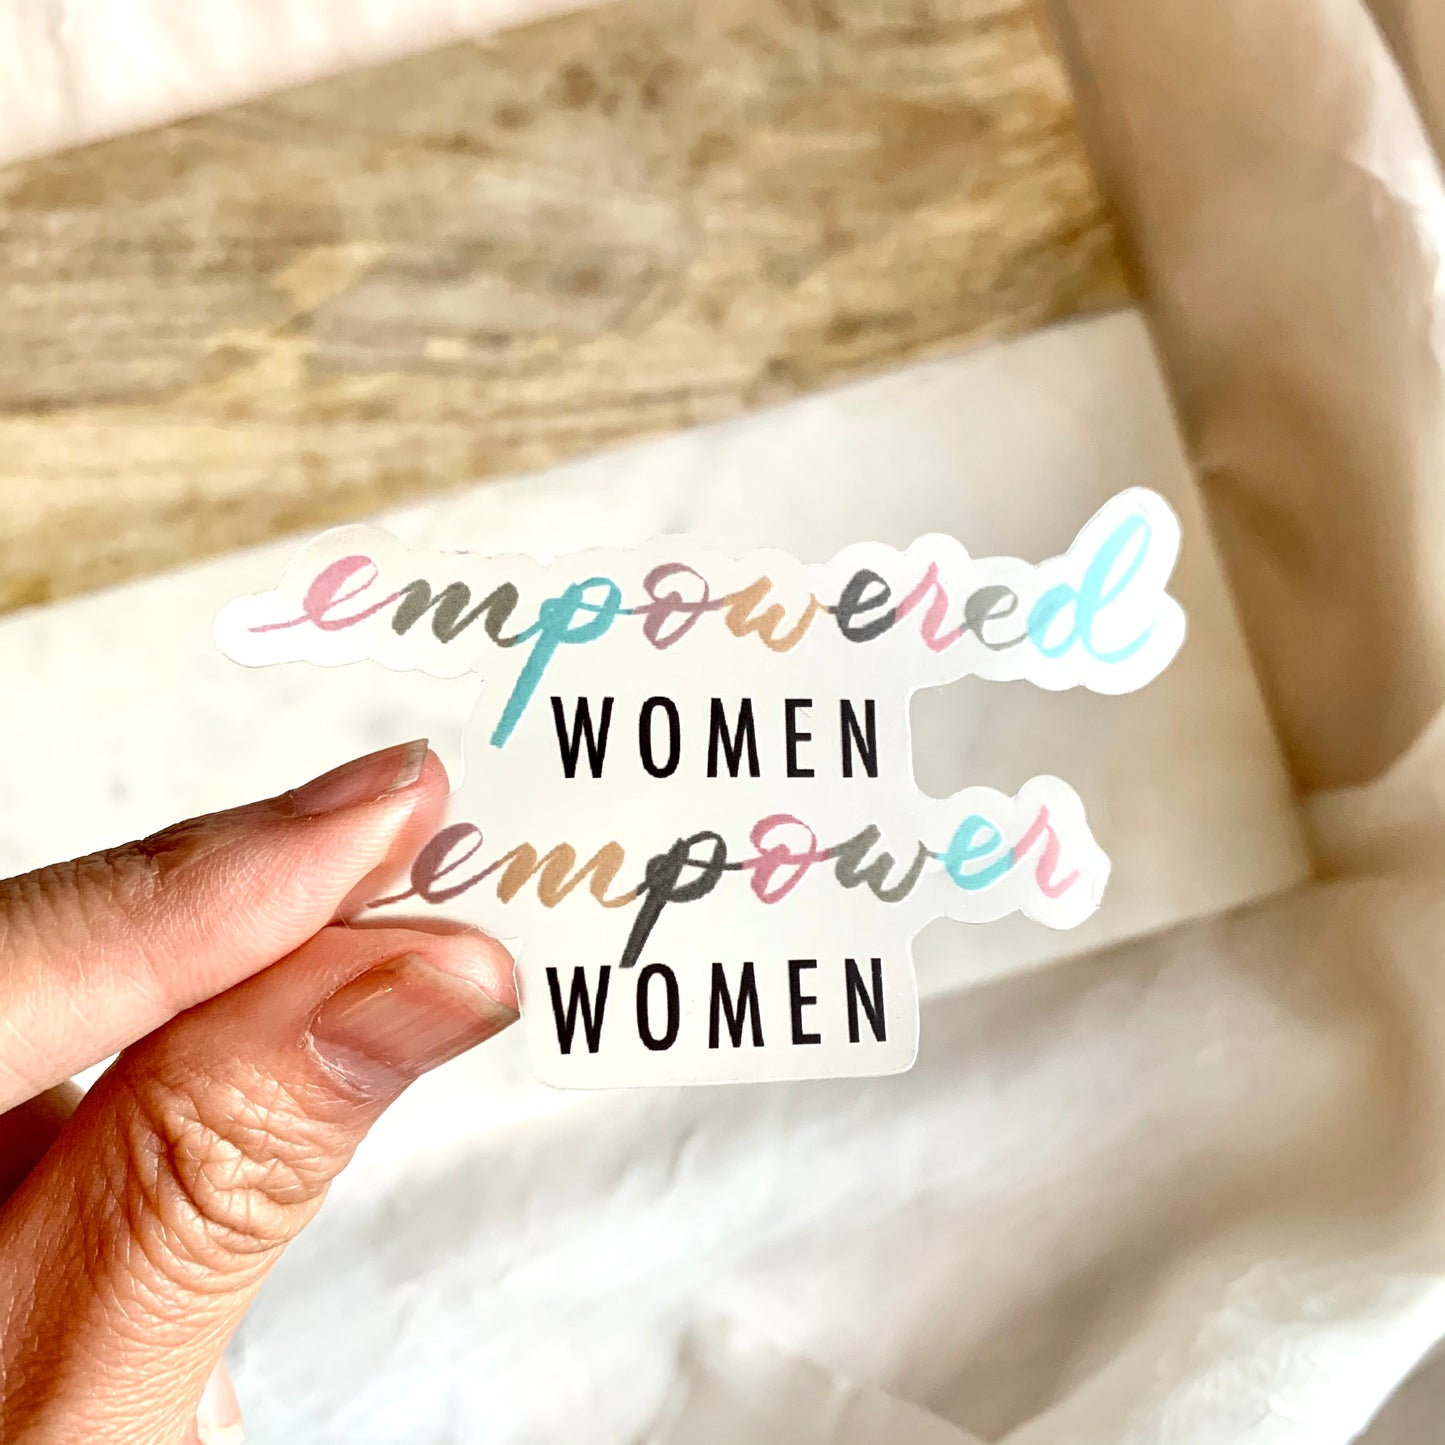 Empowered women empower women sticker, women helping other women sticker, women empowerment sticker